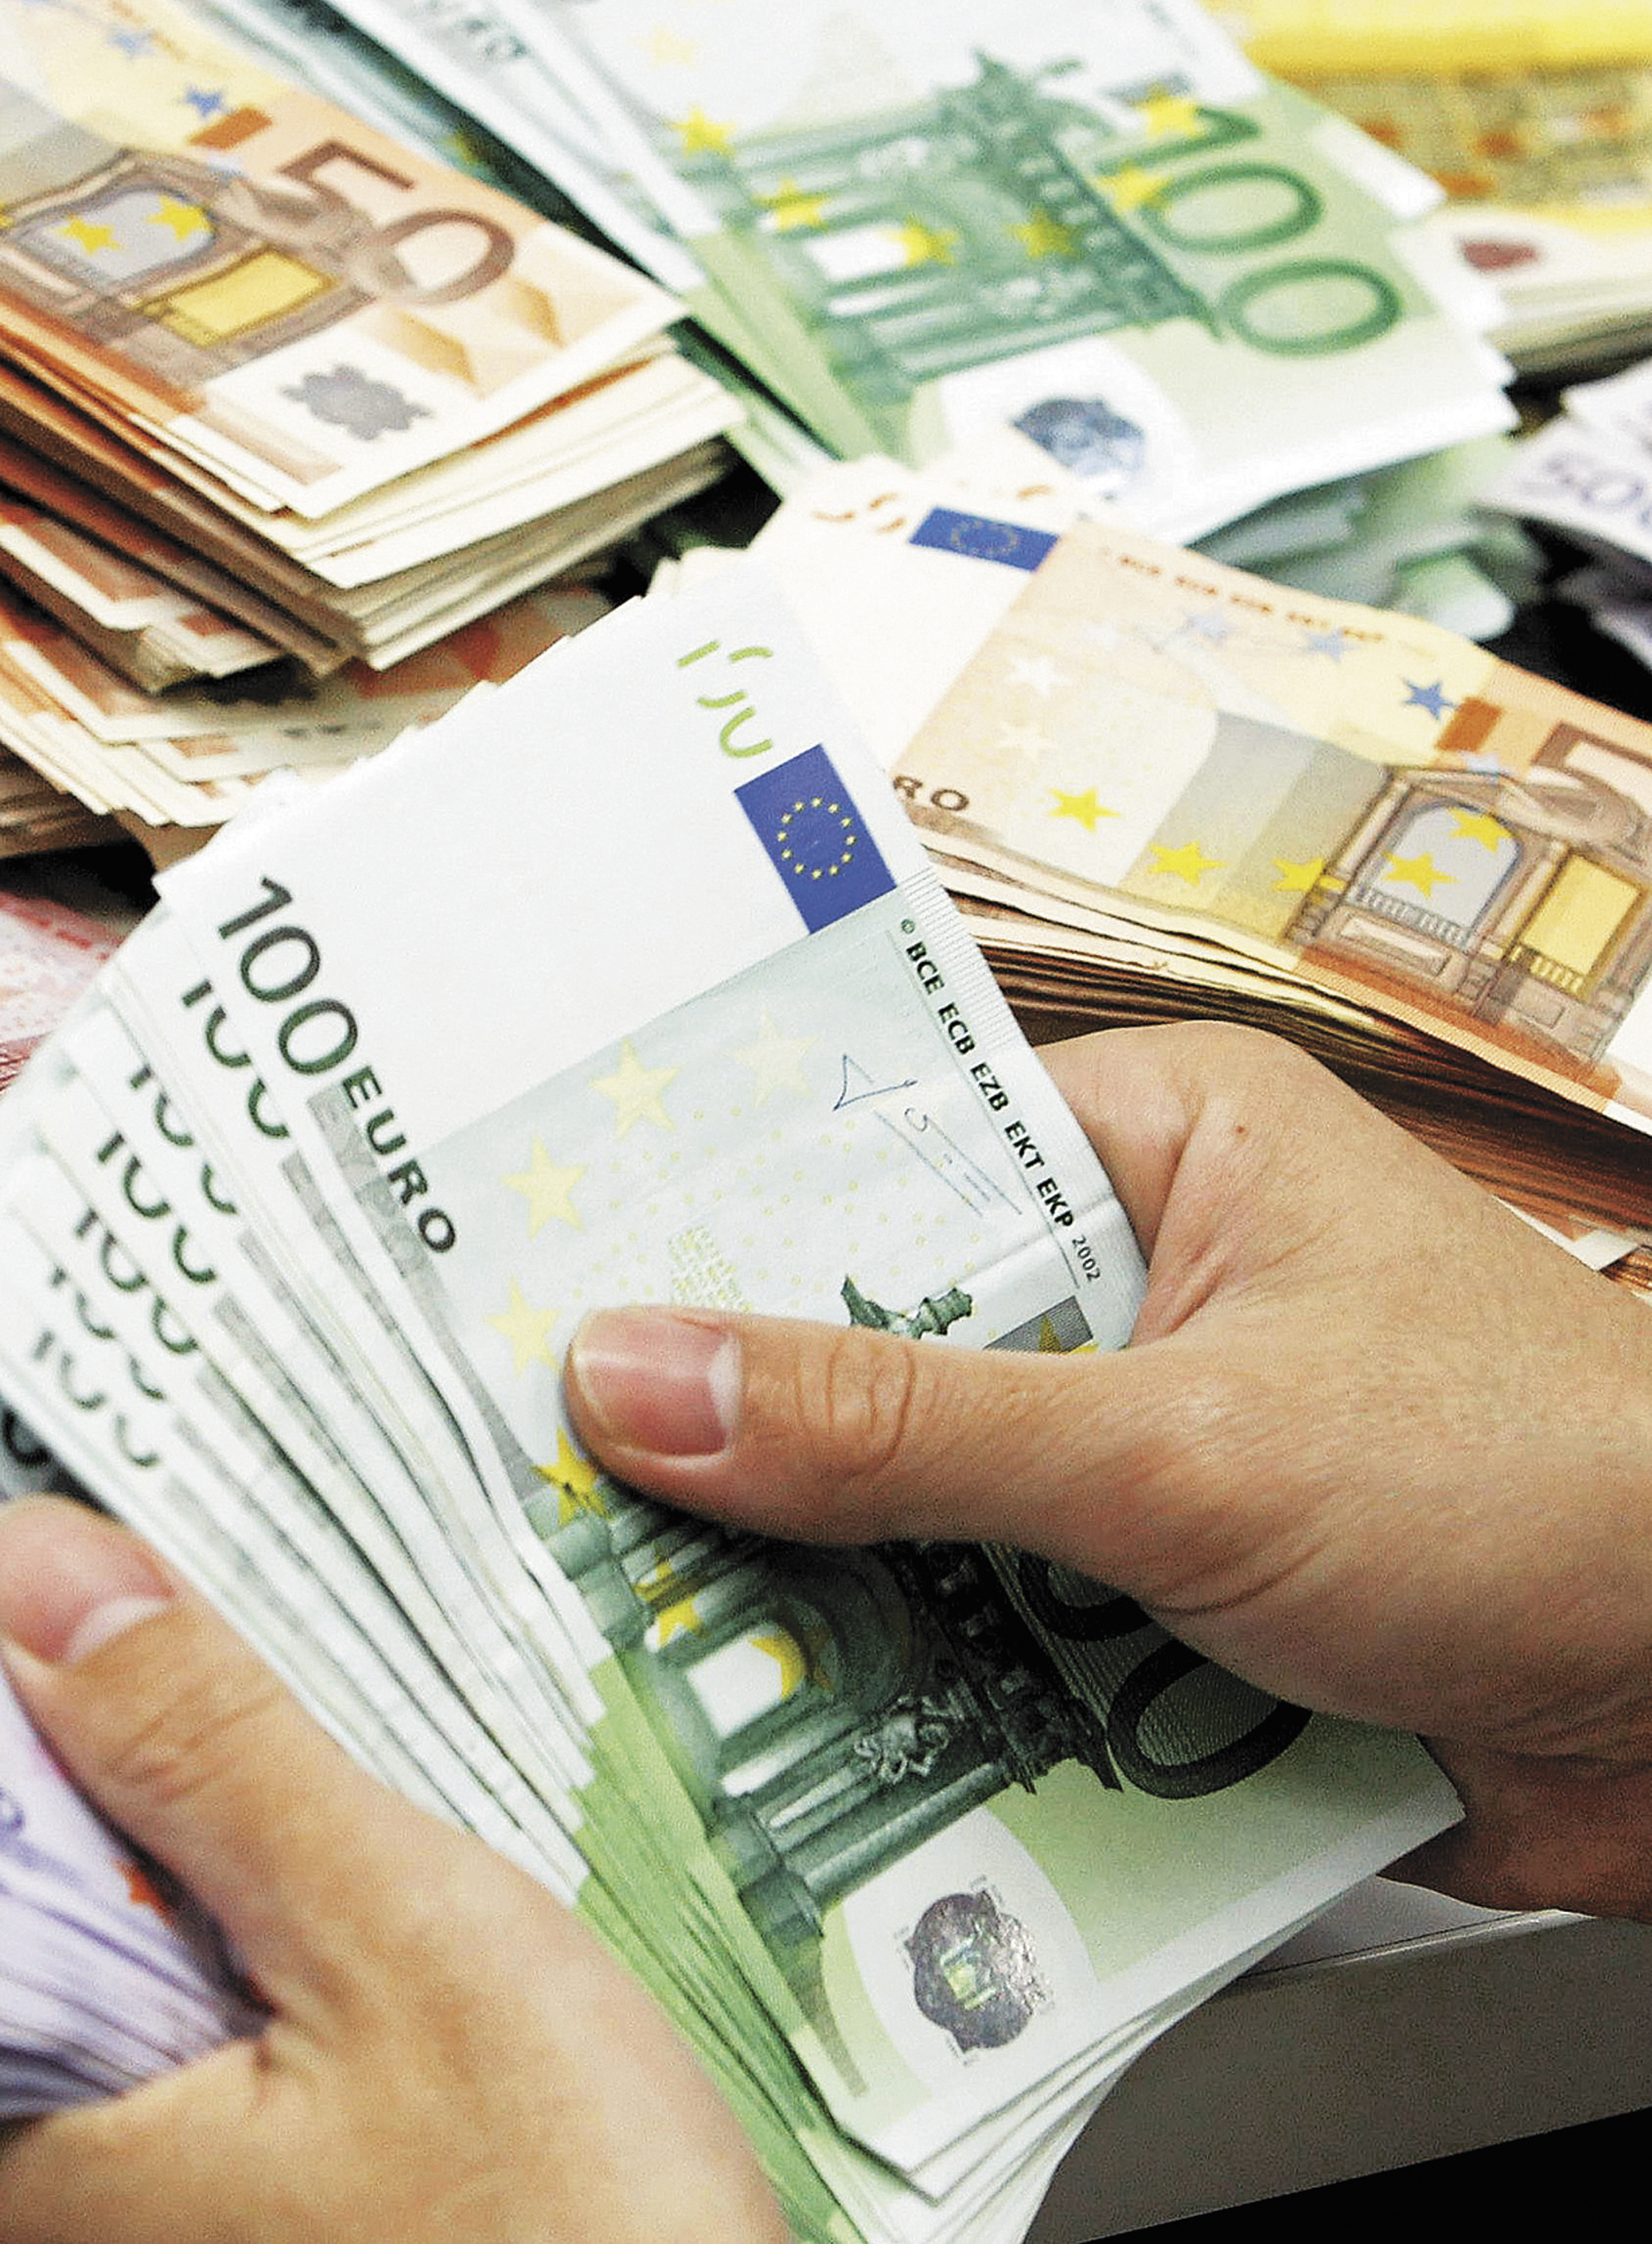 Ομολογιακό δάνειο 26,17 εκατ. ευρώ για την Ντρουκφάρμπεν